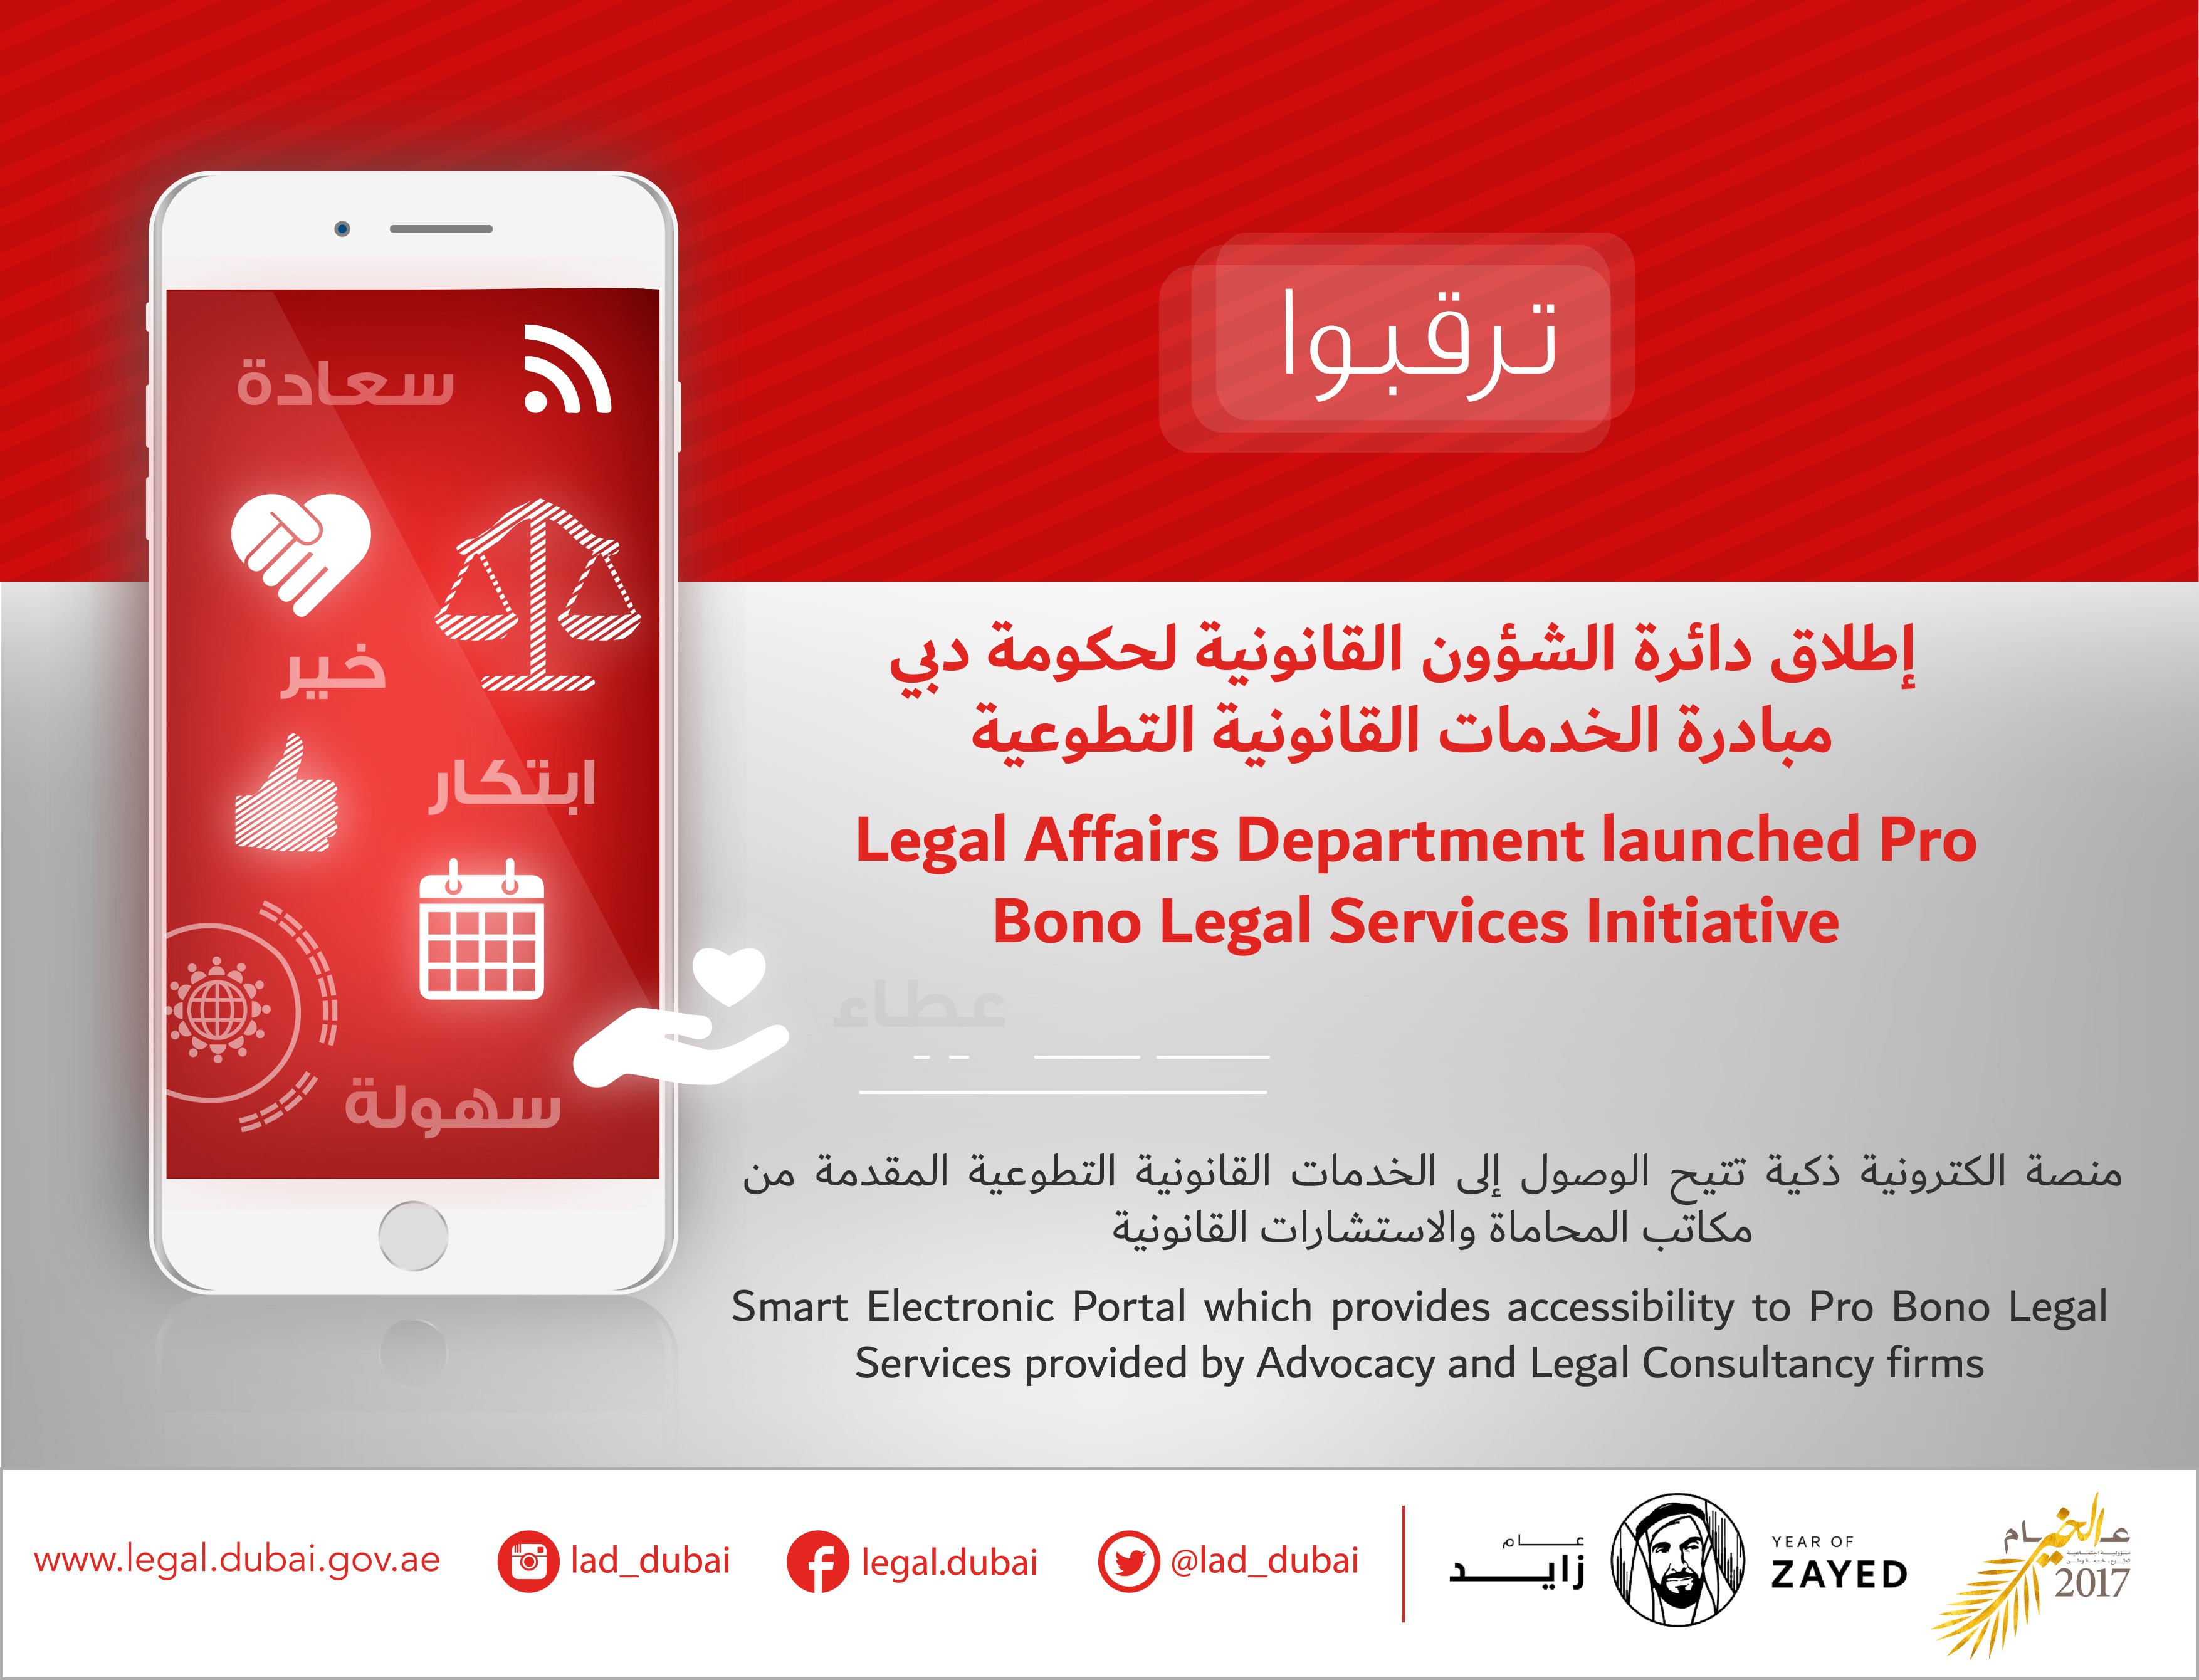 دائرة الشؤون القانونية لحكومة دبي تستكمل بناء المنصة الذكية للخدمات القانونية التطوعية